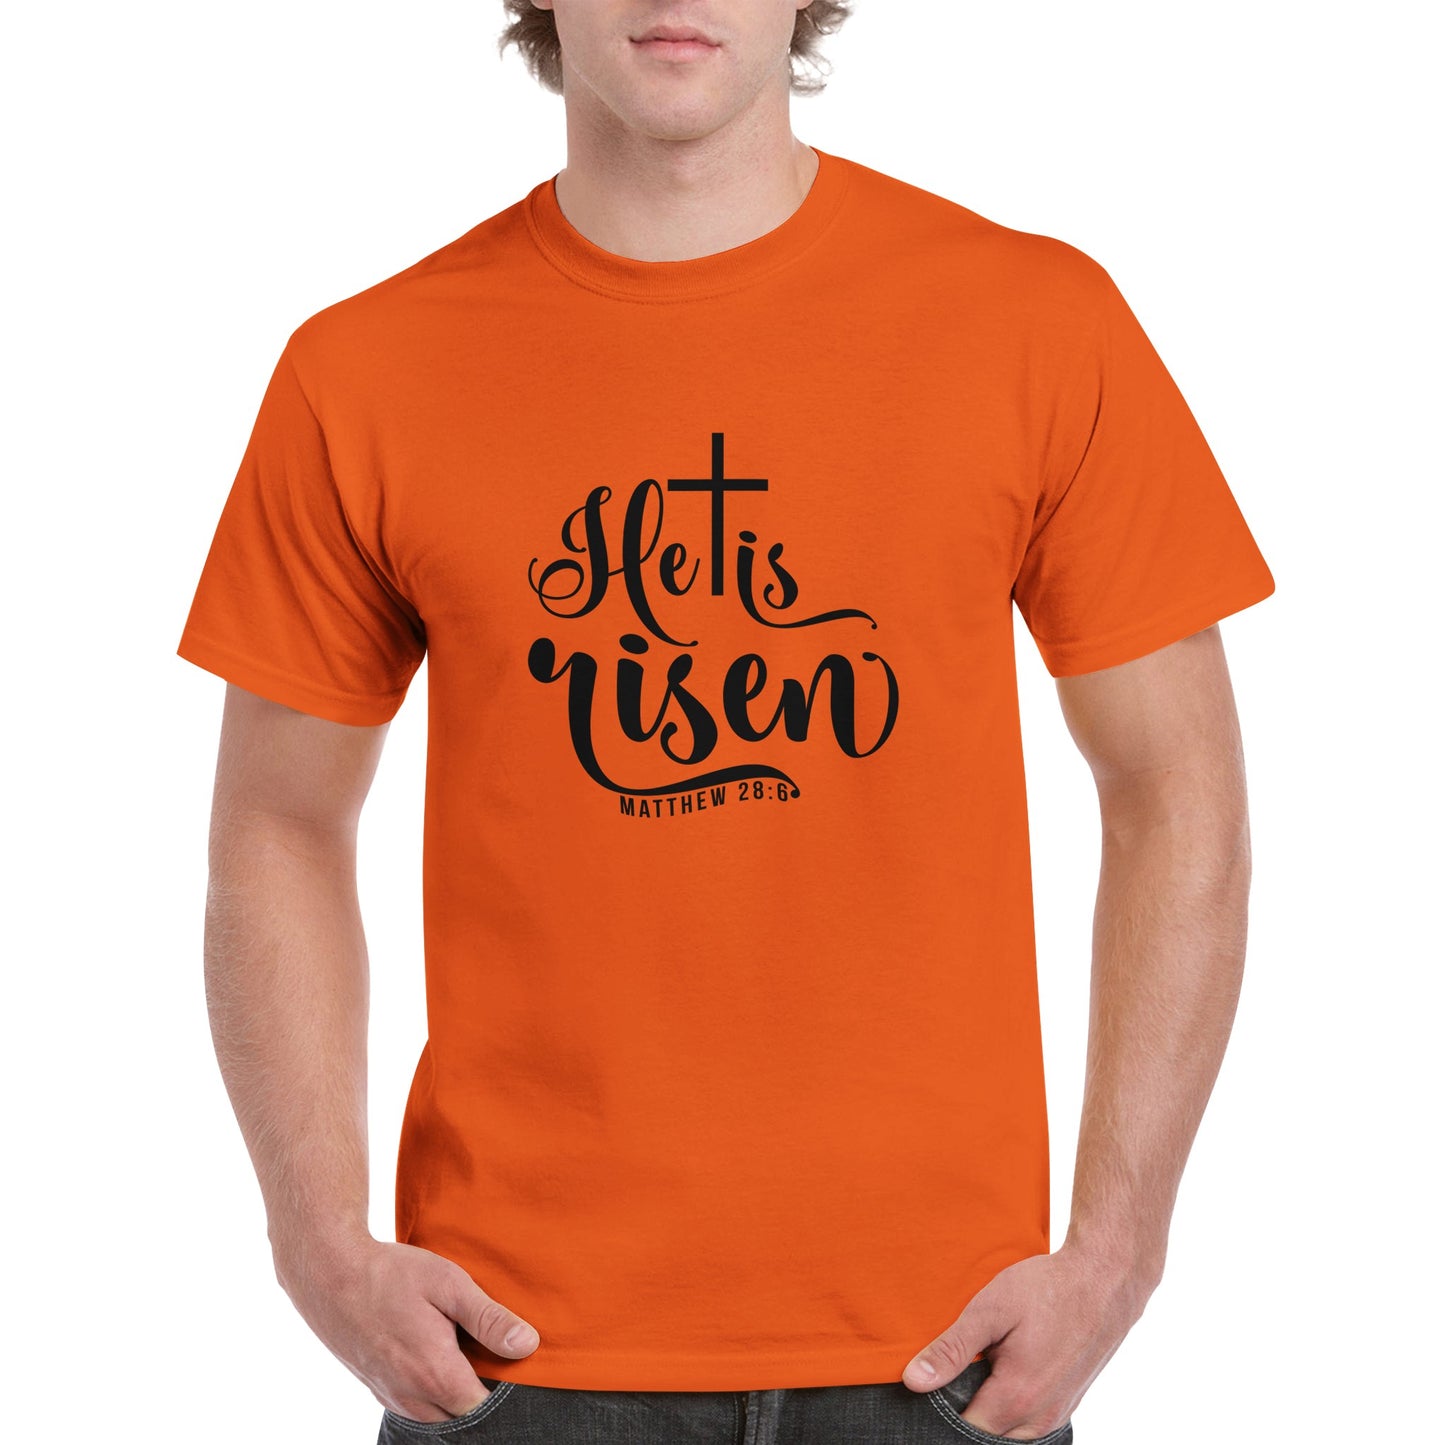 He is Risen (Matthew 20:6) - Heavyweight Unisex Crewneck T-shirt